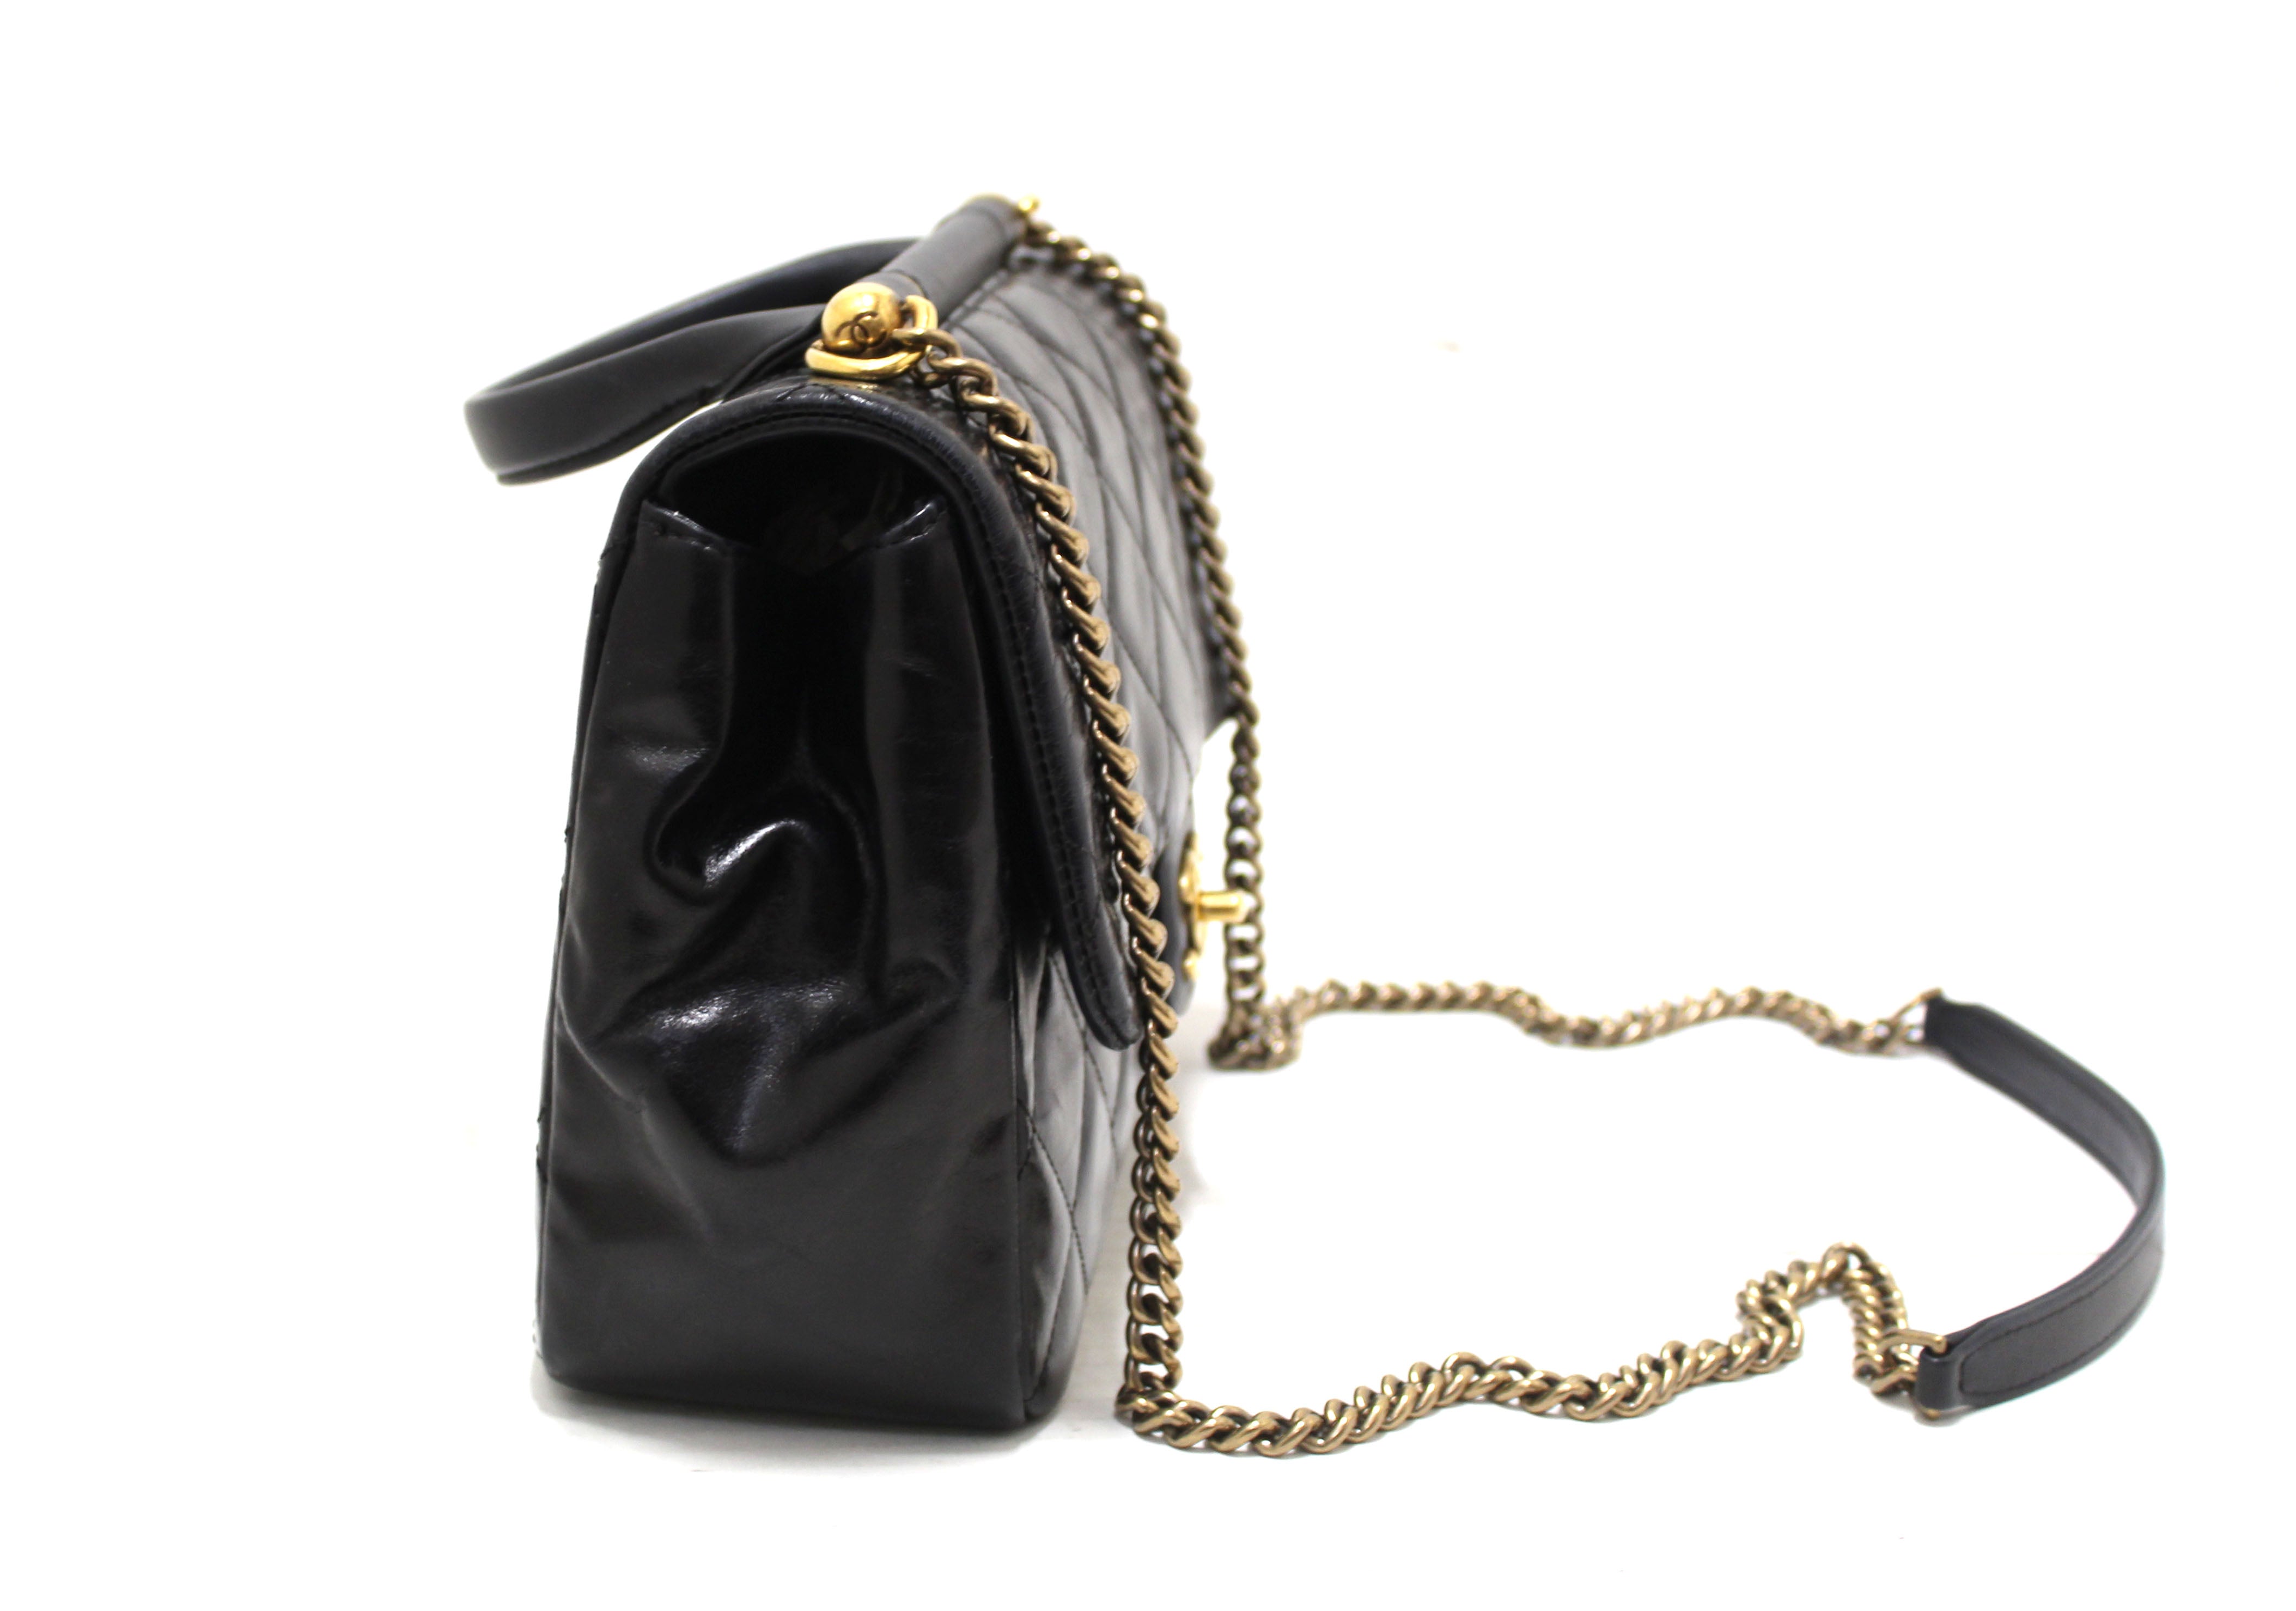 chanel gold bar top handle bag vintage